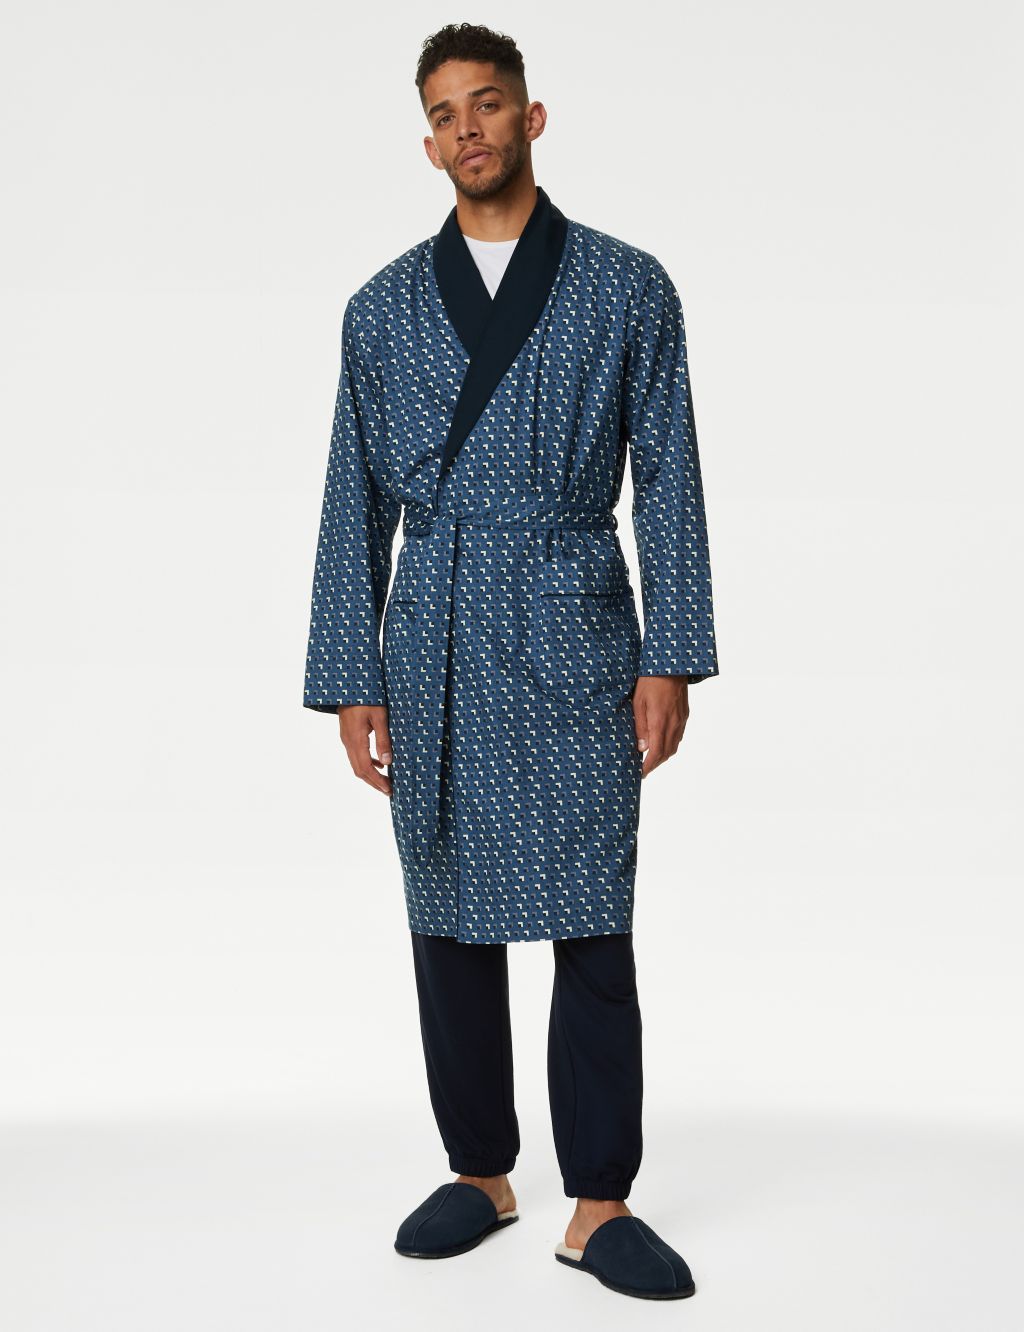 Black Men's See-Through Lace Pajamas Dressing Gown Bathrobe Loungewear  Nightwear